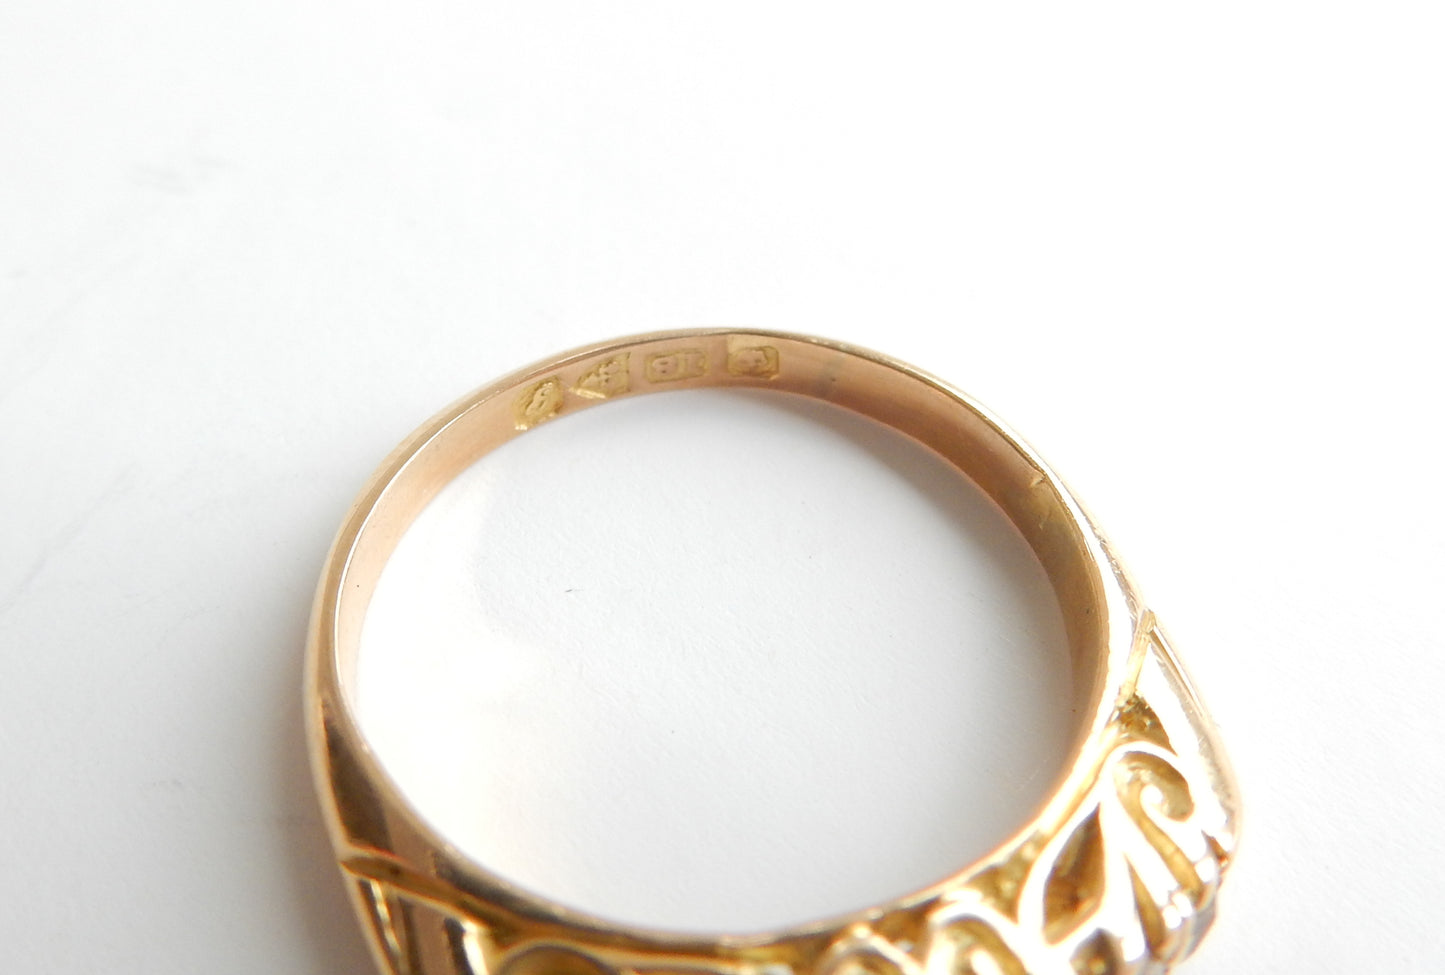 Antique Edwardian 18ct Gold Diamond Five Stone Ring US Size 4.5 UK K